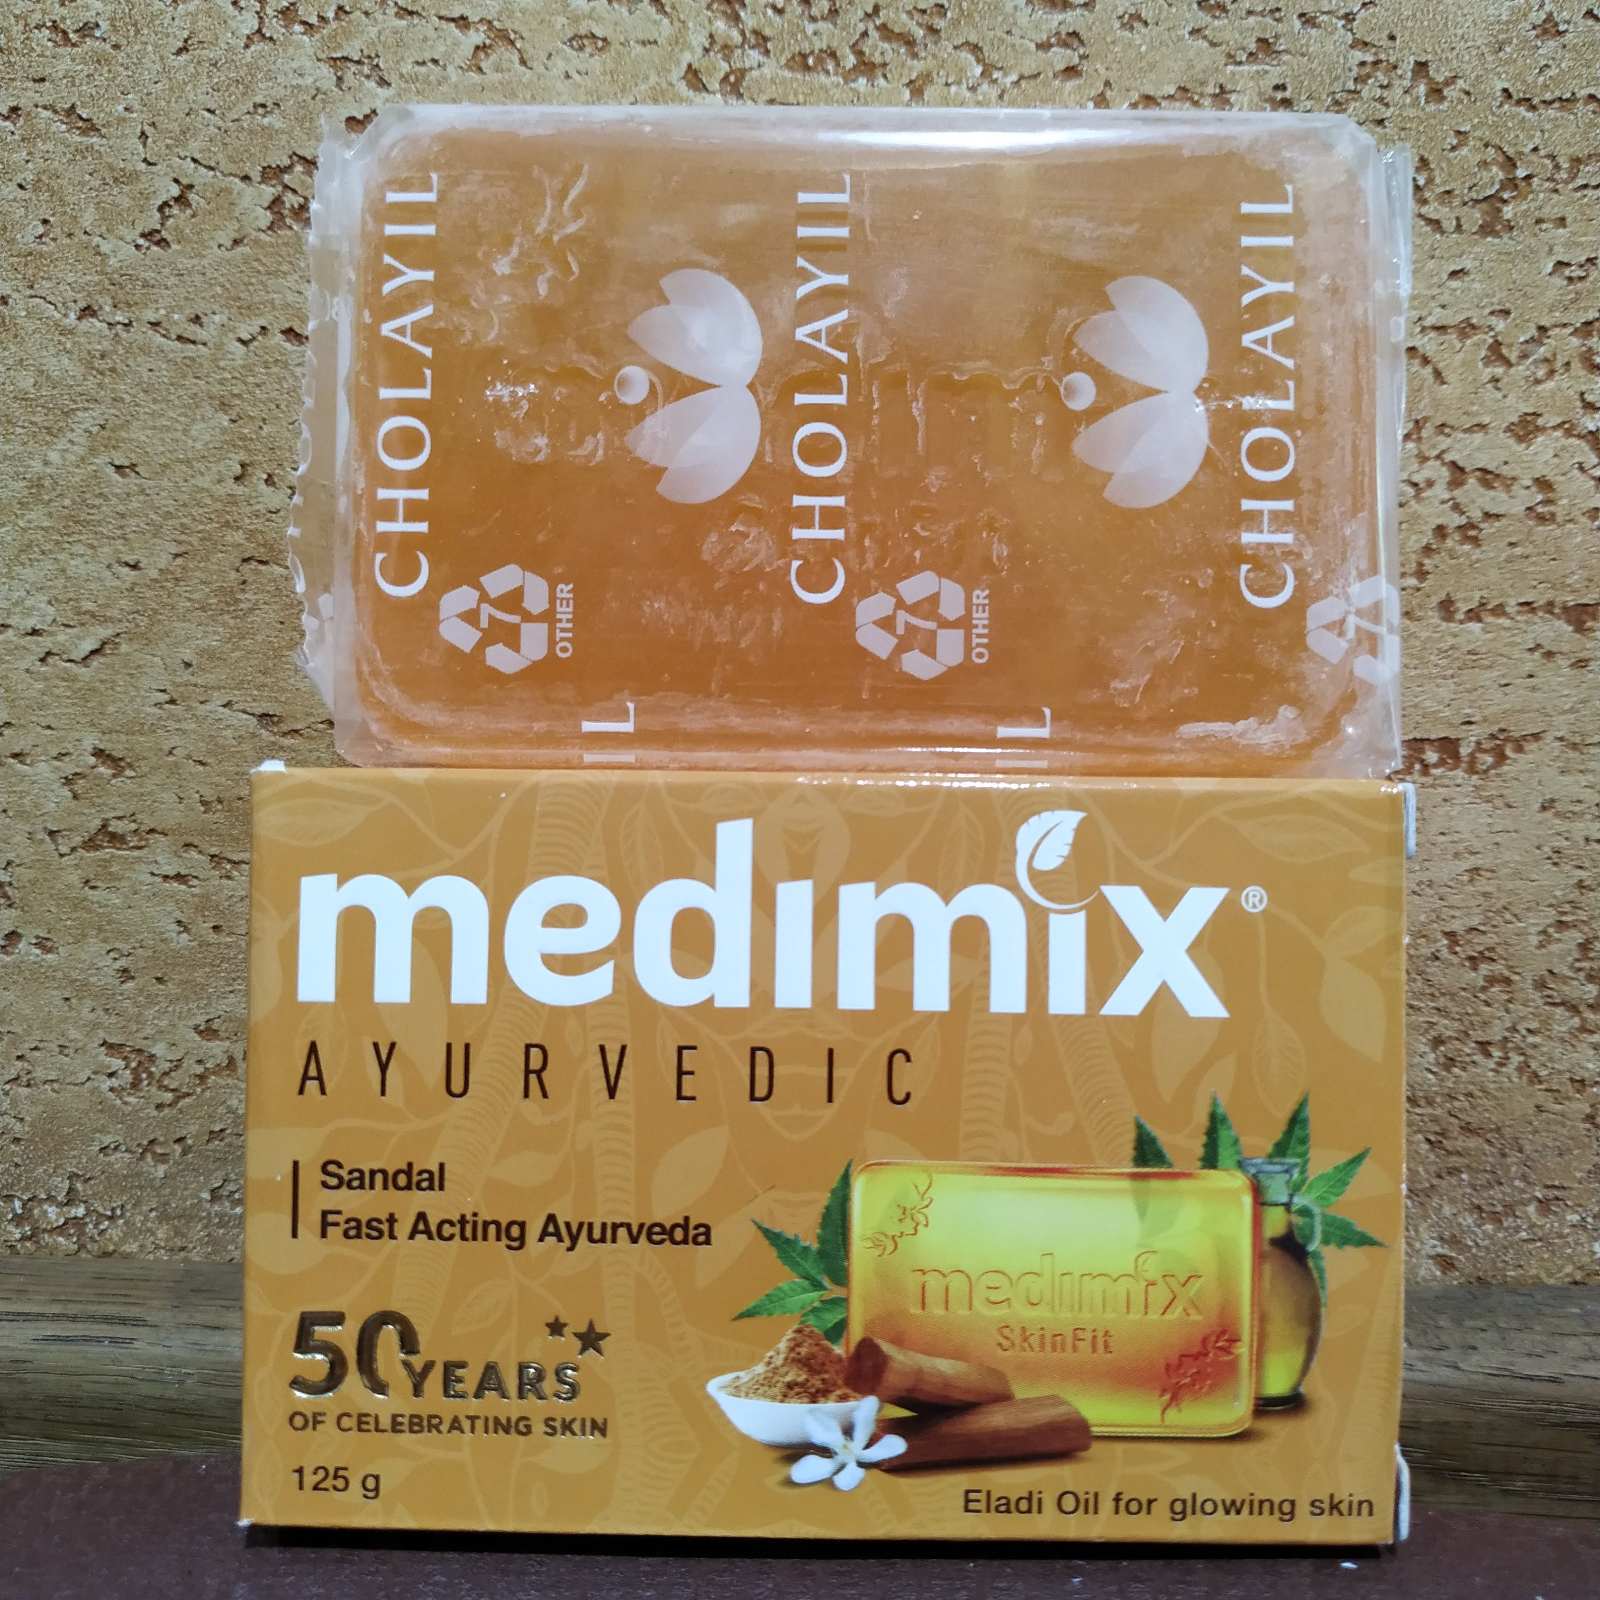 Мыло Сандал и масло элади Медимикс 125гр Medimix Sandal Для всех типов кожи, проблемная, антисептическое мыло Индия Аюрведа